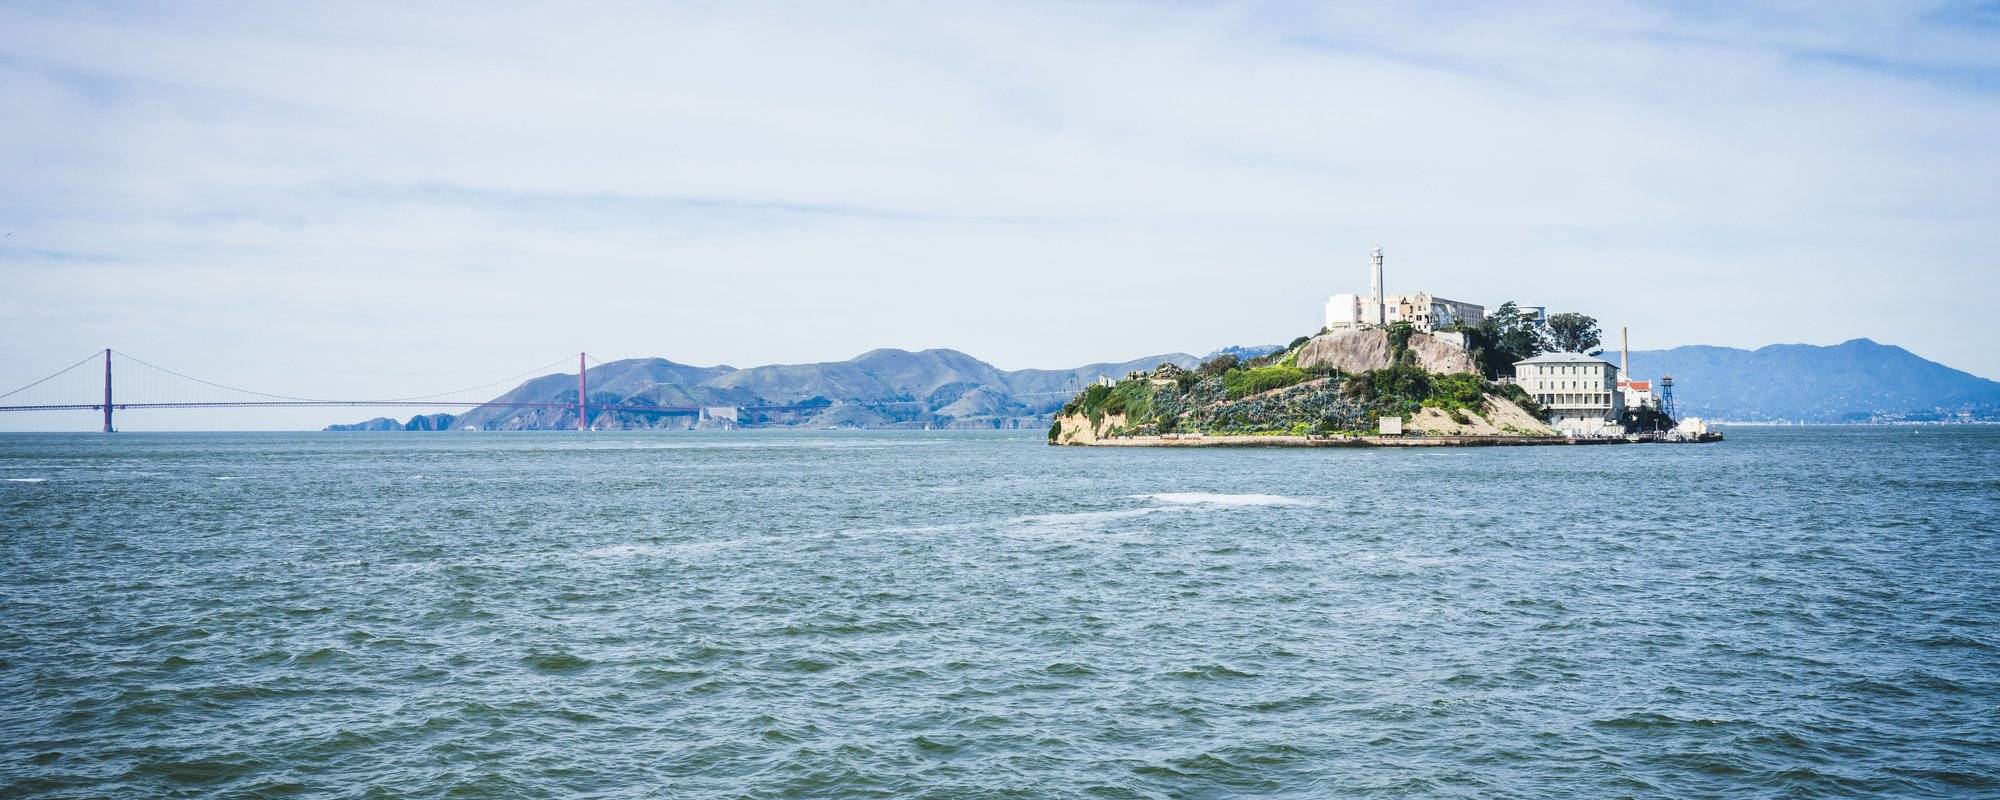 A Tour of Alcatraz (Part 1)